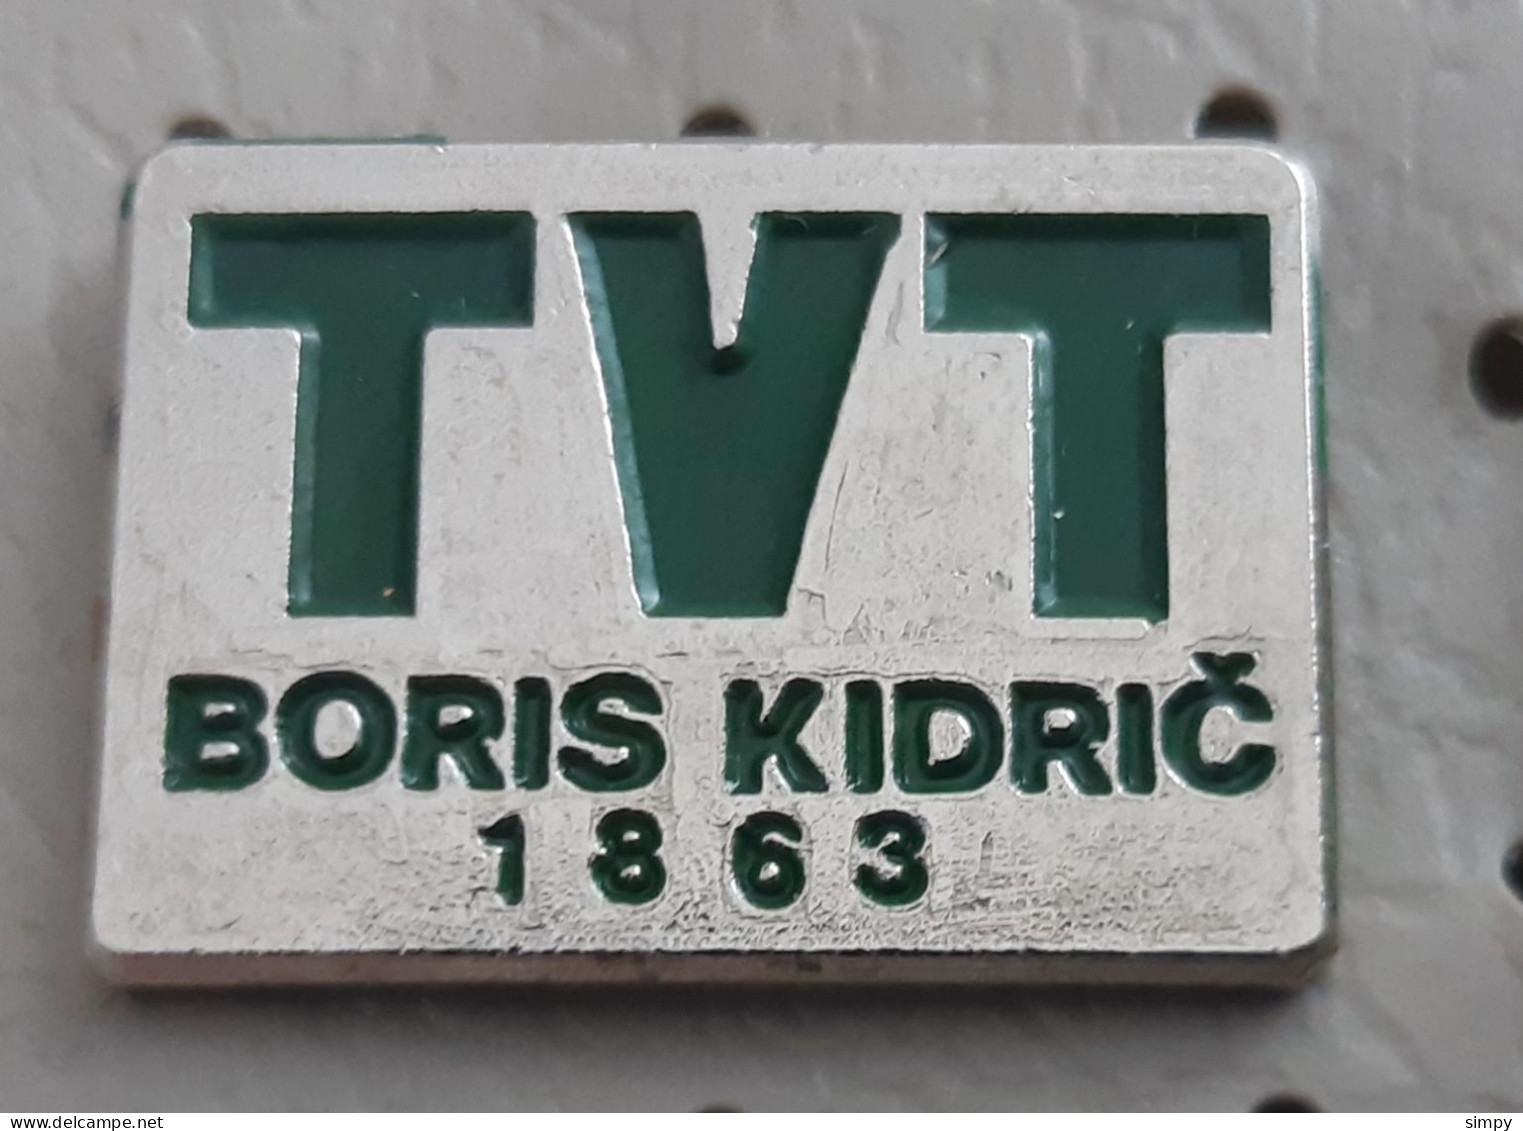 TVT Boris Kidric Maribor 1863 Locomotive Train Industry Slovenia Ex Yugoslavia Pin - Transportation